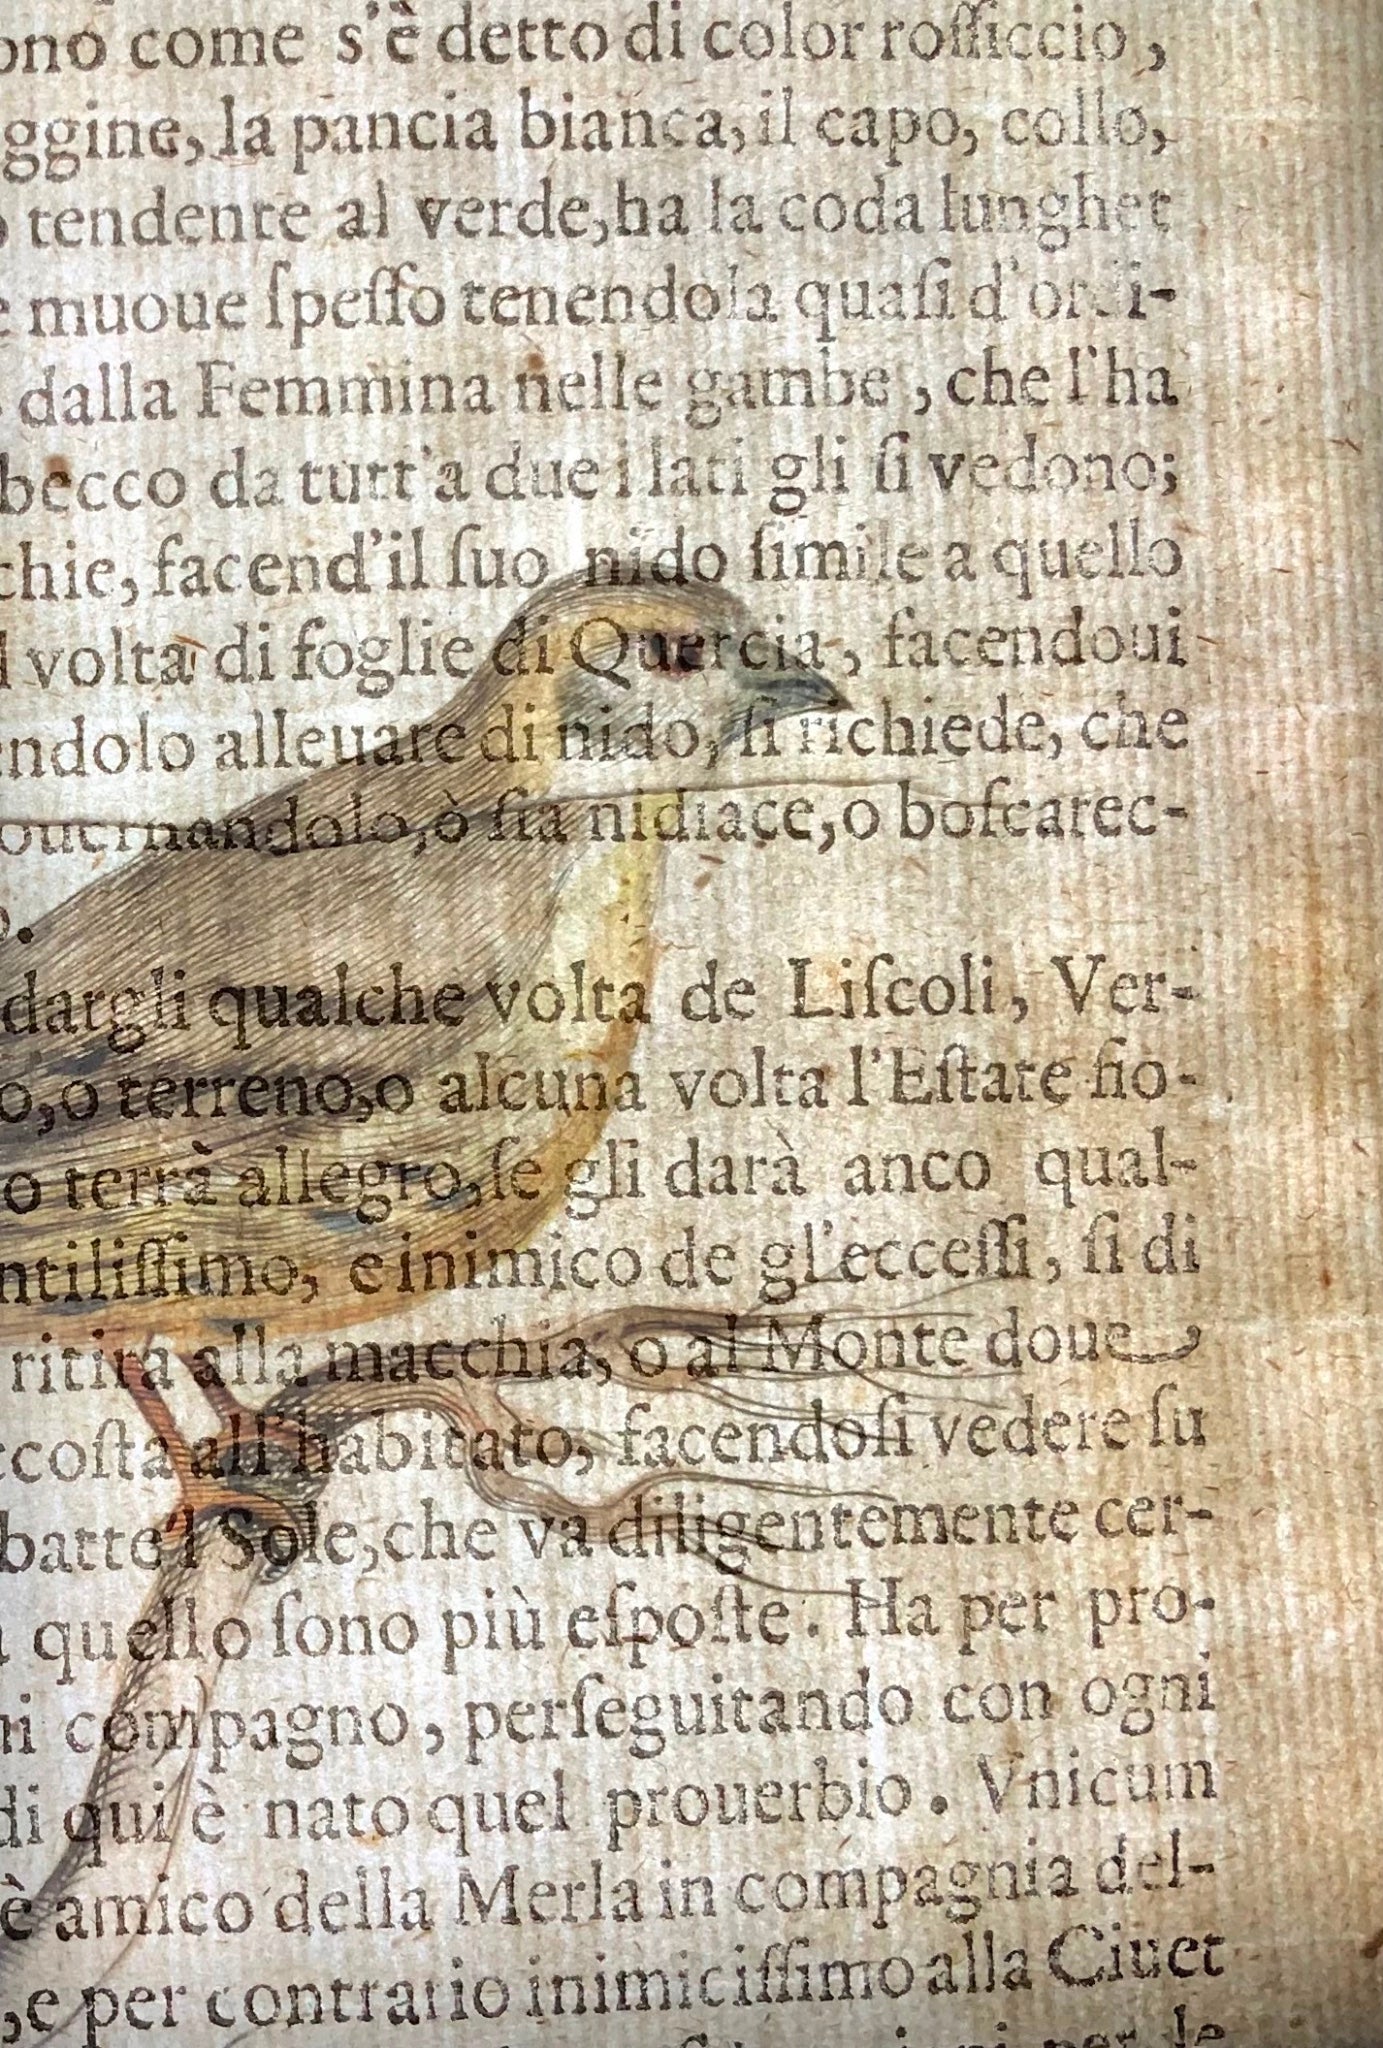 1622 Lucherino, Ornitologia, Ant. Tempesta; F. Villamena, Maestro dell'incisione 